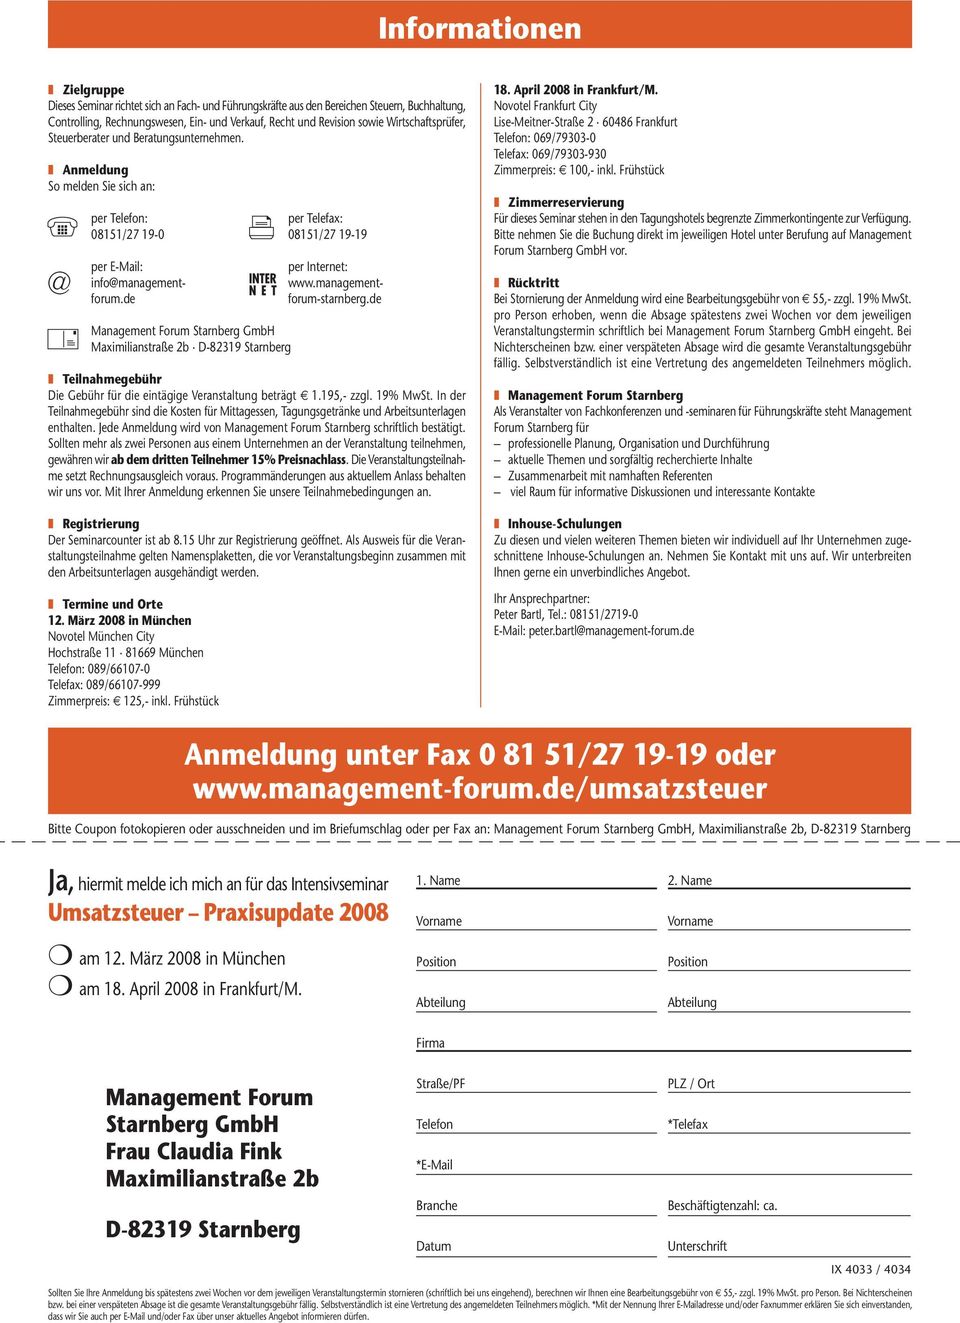 de per E-Mail: info@managementforum.de Management Forum Starnberg GmbH Maximilianstraße 2b D-82319 Starnberg Teilnahmegebühr Die Gebühr für die eintägige Veranstaltung beträgt 1.195,- zzgl. 19% MwSt.